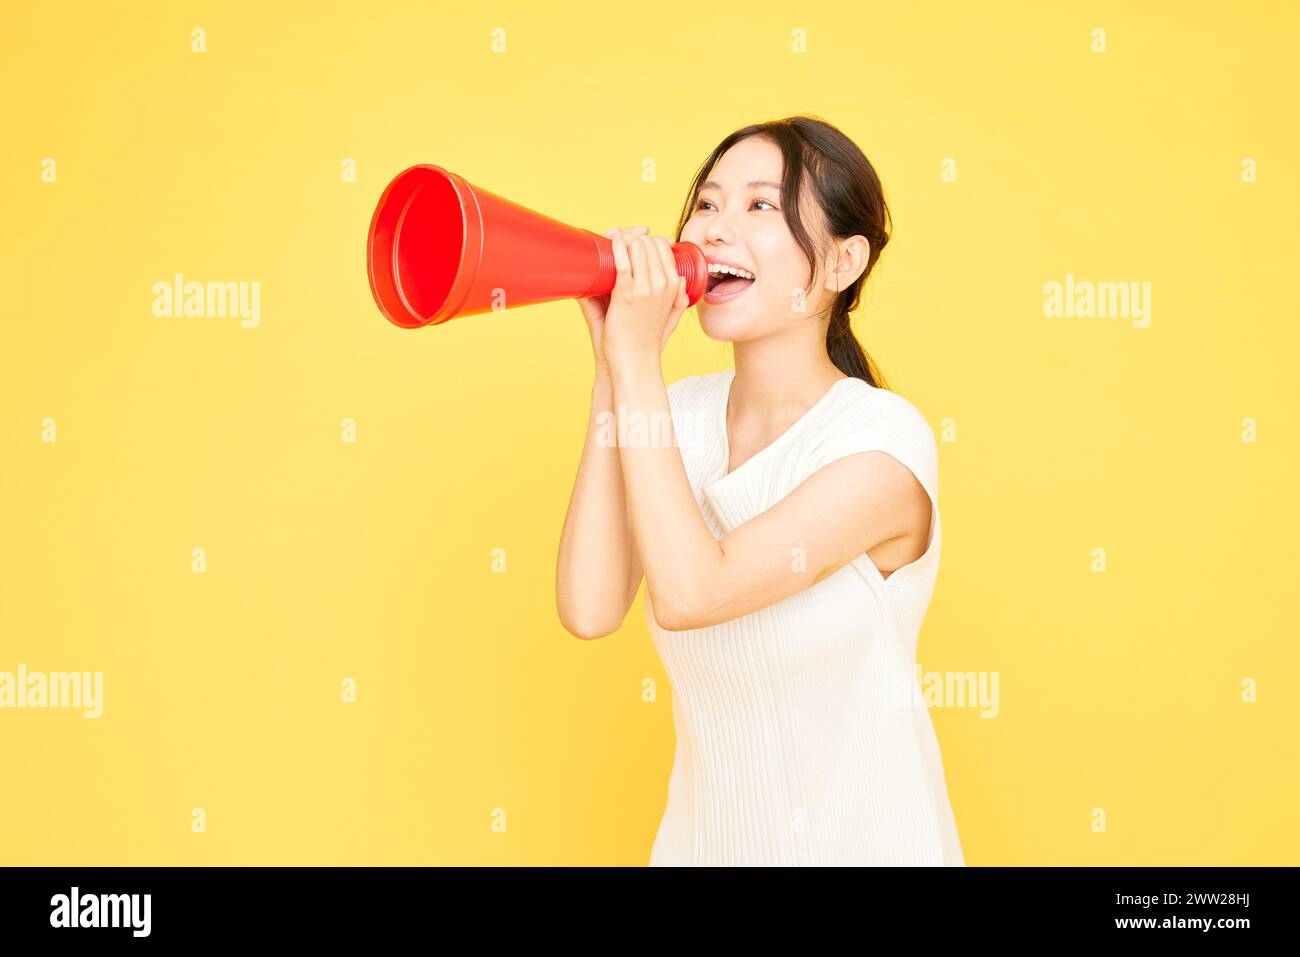 Una donna che tiene un megafono rosso su uno sfondo giallo Foto Stock